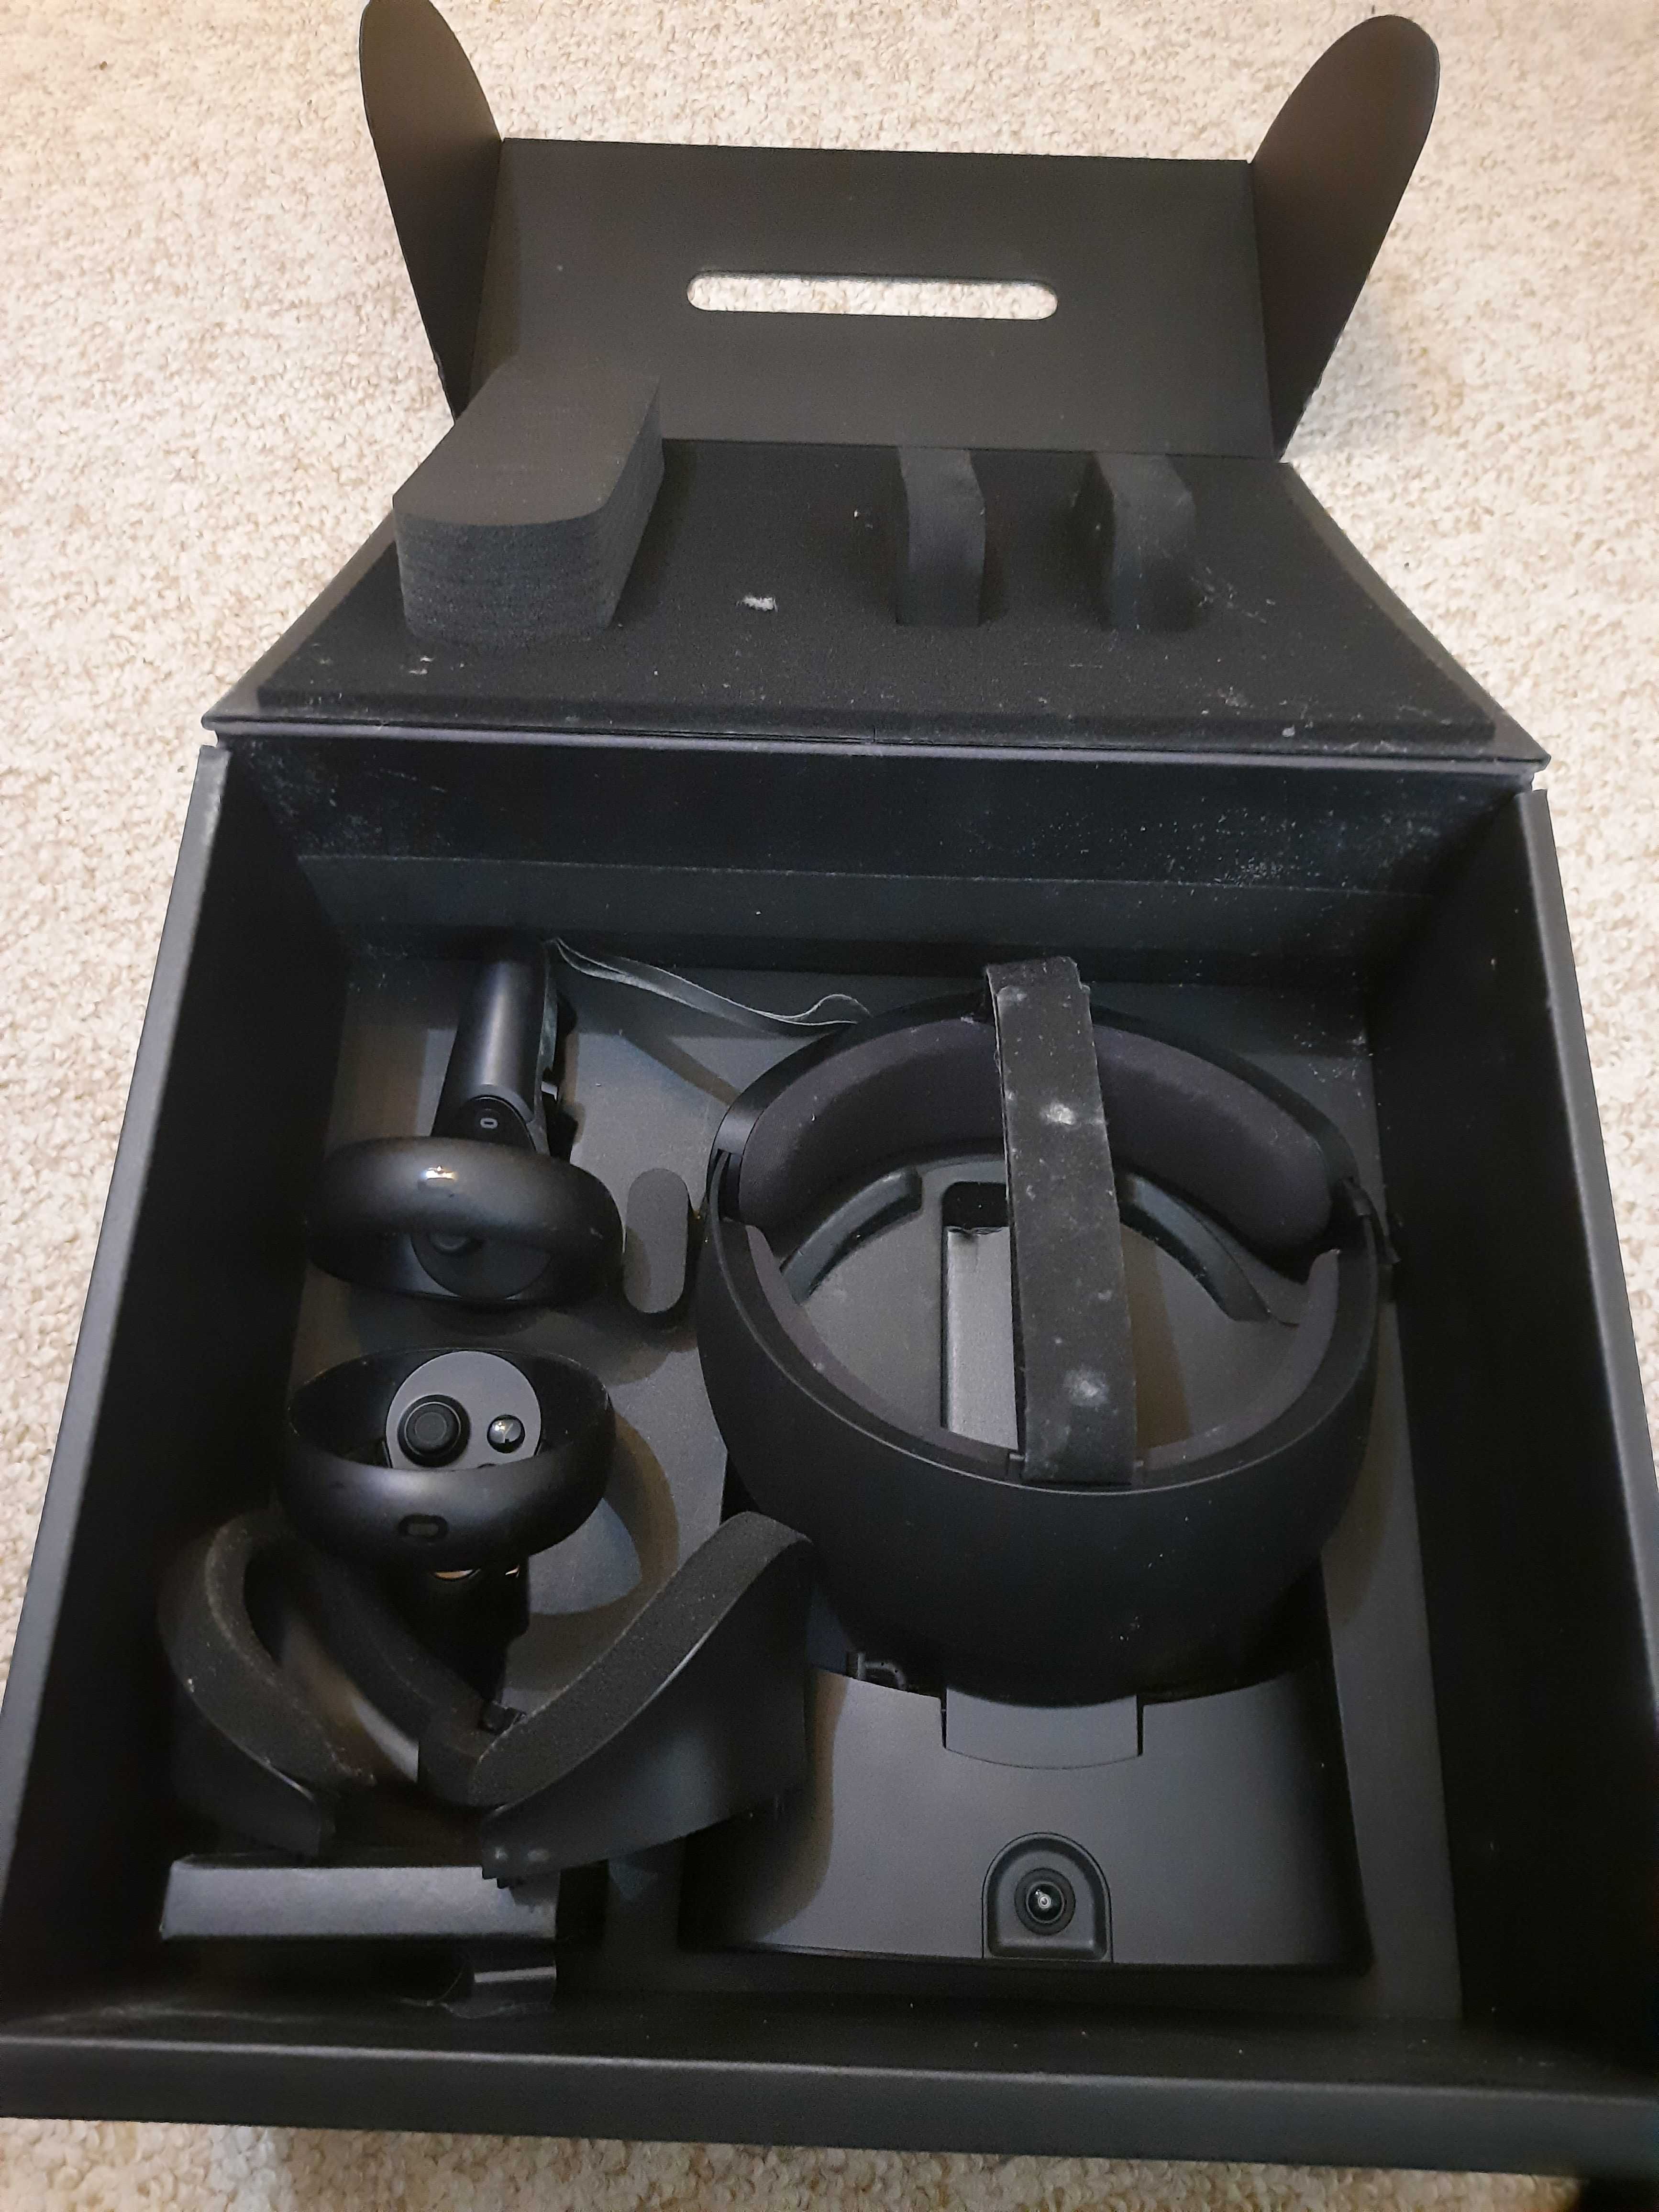 Oculus Rift S VR